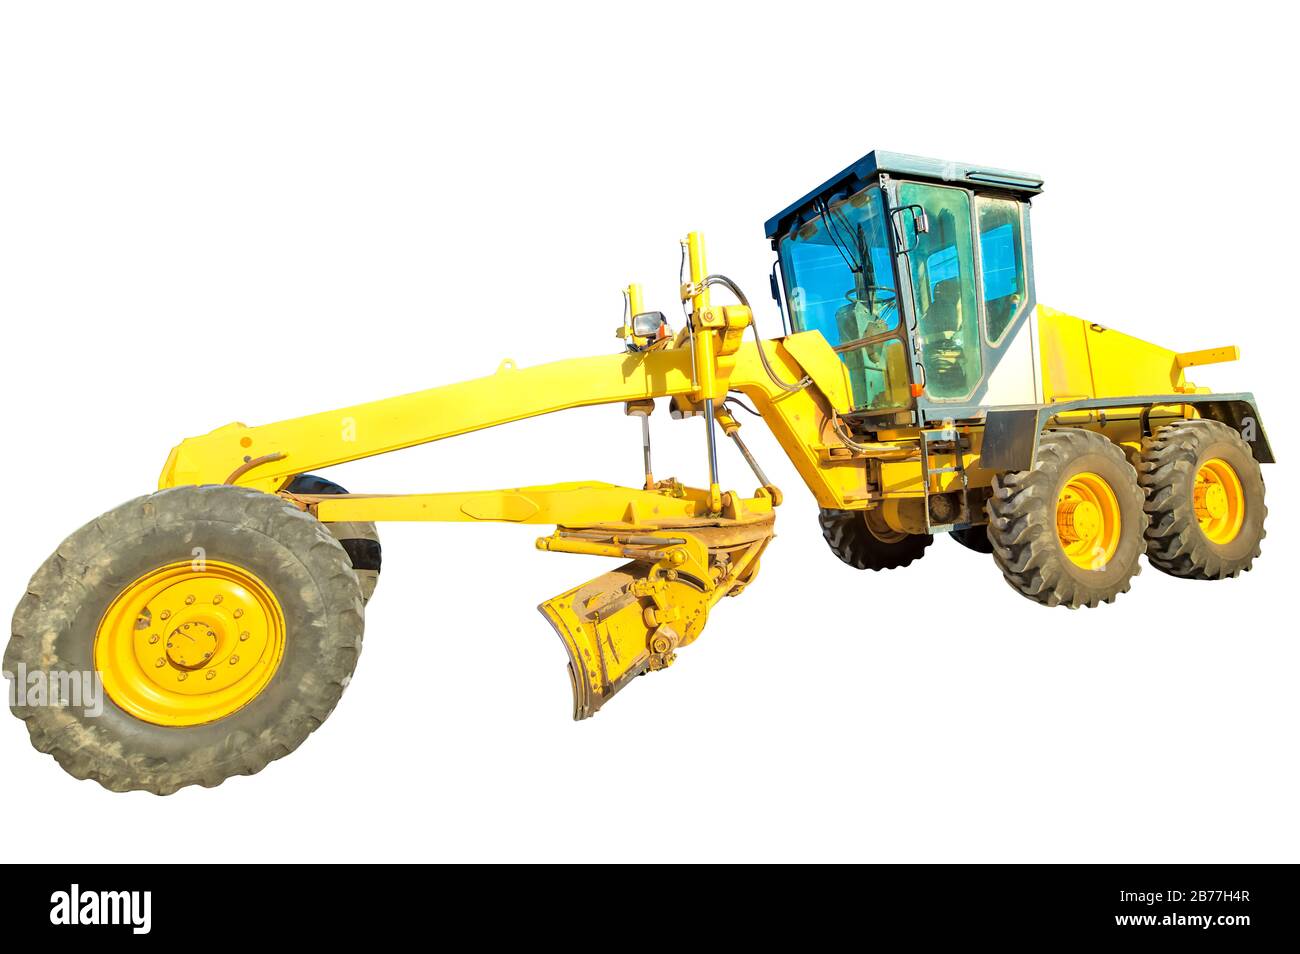 Large cornière de bulldozer jaune sur les roues qui pontent du béton bitumineux. Isolé sur fond blanc avec espace de copie. Travaux en cours, industriels Banque D'Images